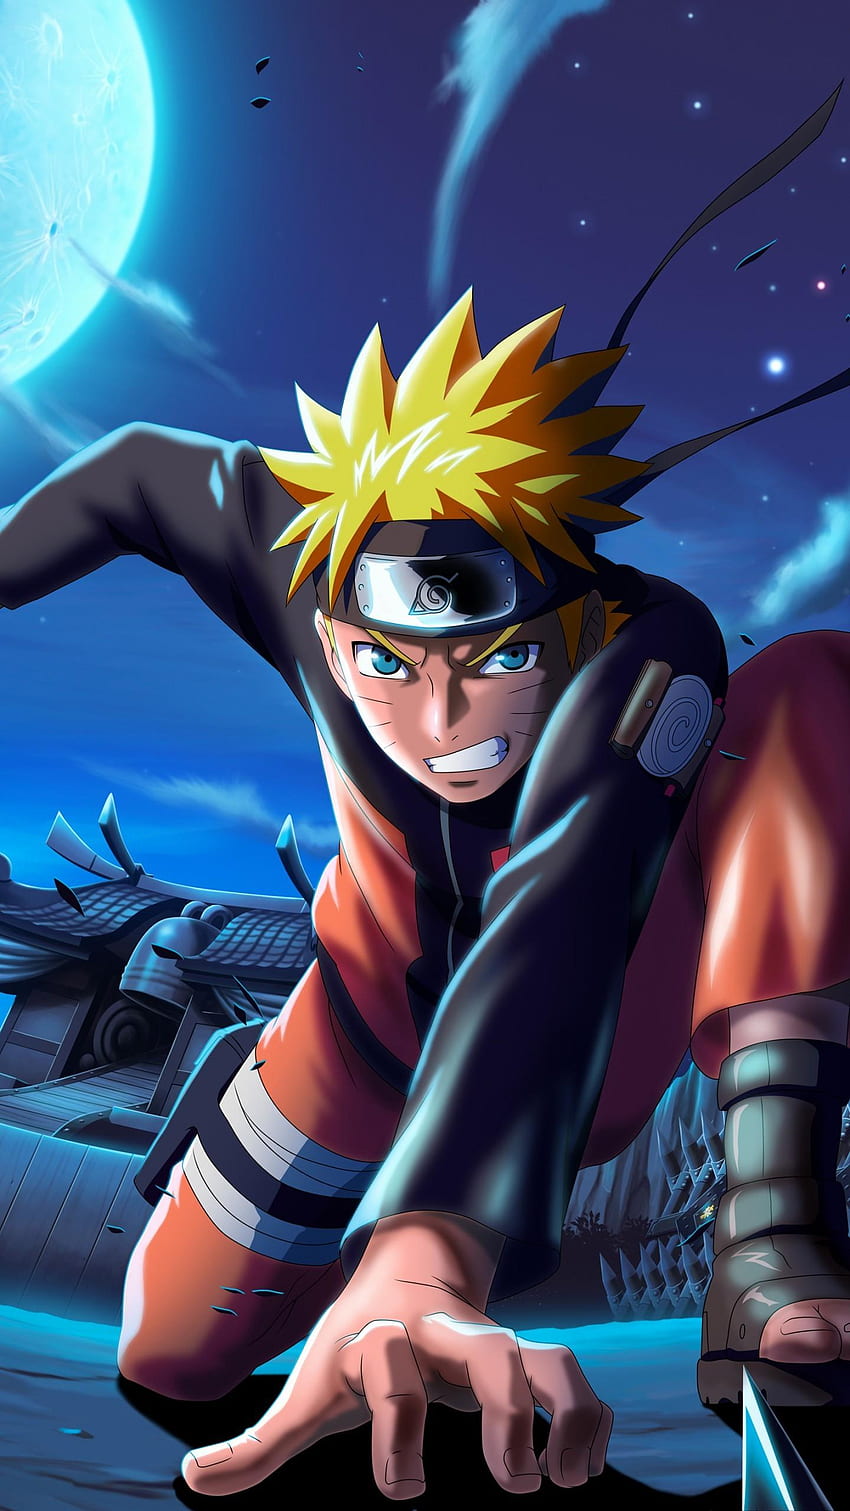 Naruto Uzumaki - vị vua của thế giới ninja. Dù bạn yêu thích anh ta vì sự dũng cảm hay tinh thần giữa đời thường, hãy xem hình ảnh liên quan để khám phá sự nghiệp của Naruto.